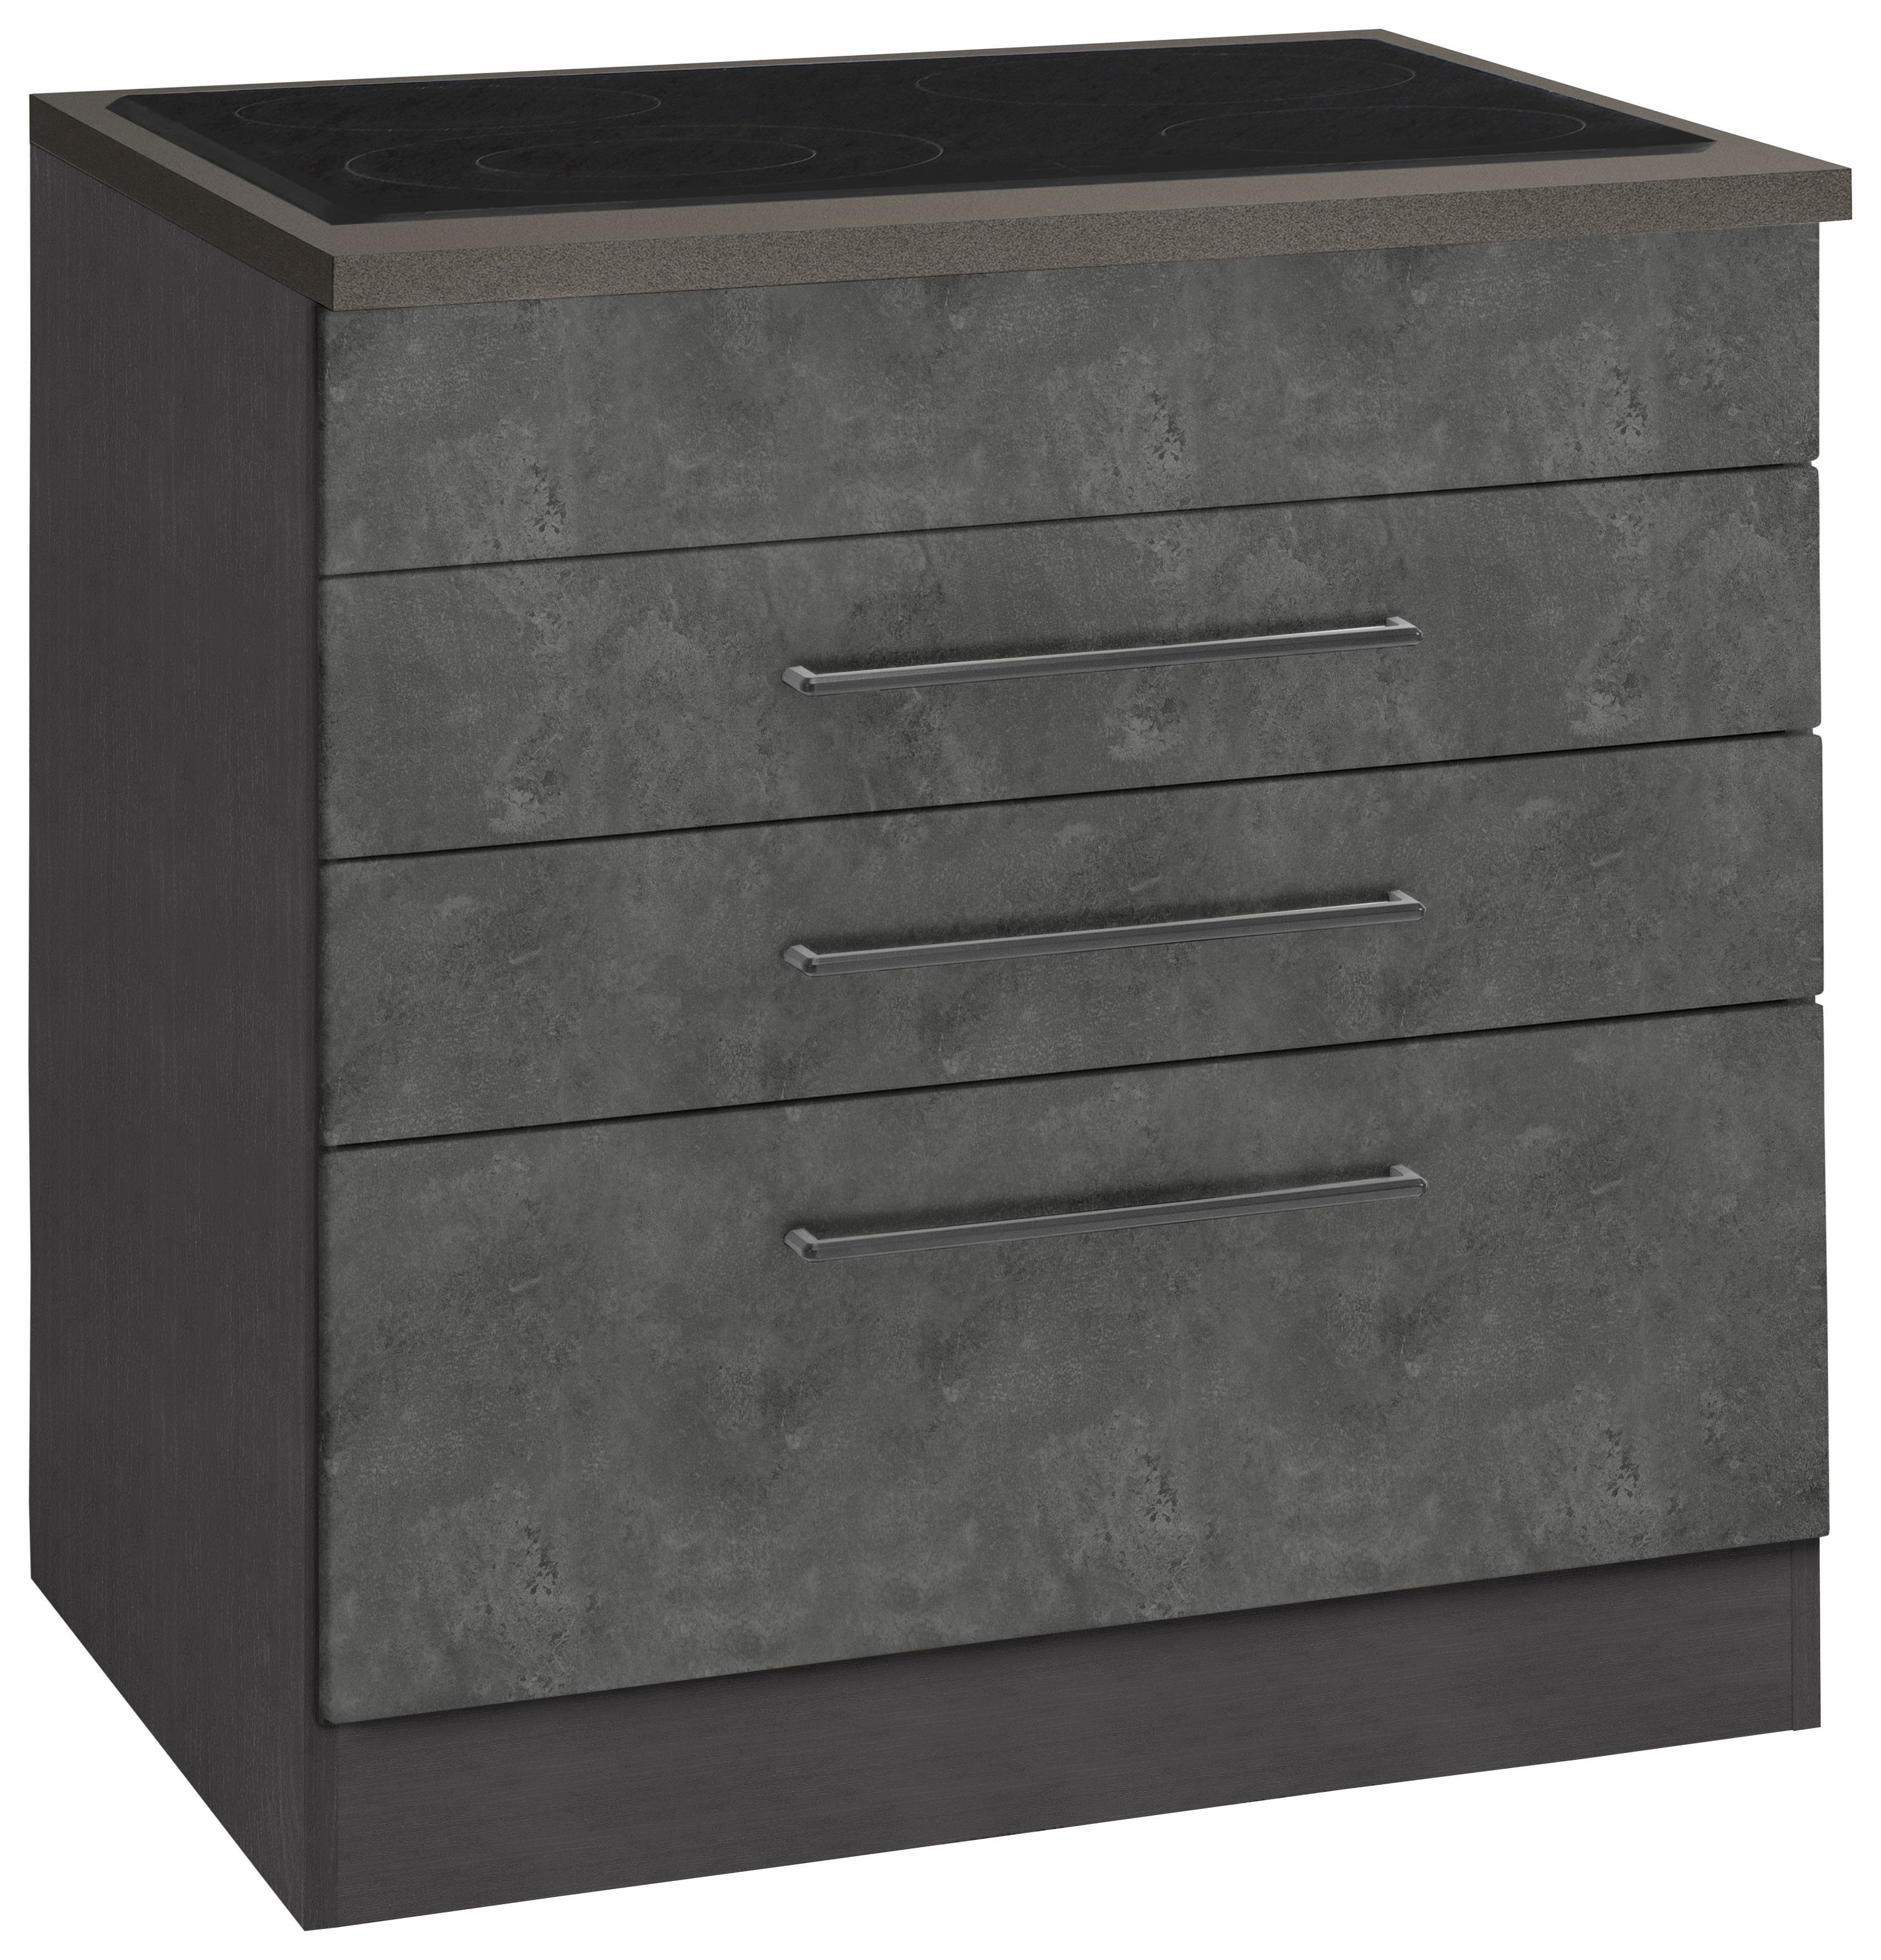 HELD MÖBEL Kochfeldumbauschrank Tulsa 80 cm breit, 2 Schubladen, 1 großer Auszug, schwarzer Metallgriff betonfarben dunkel | grafit